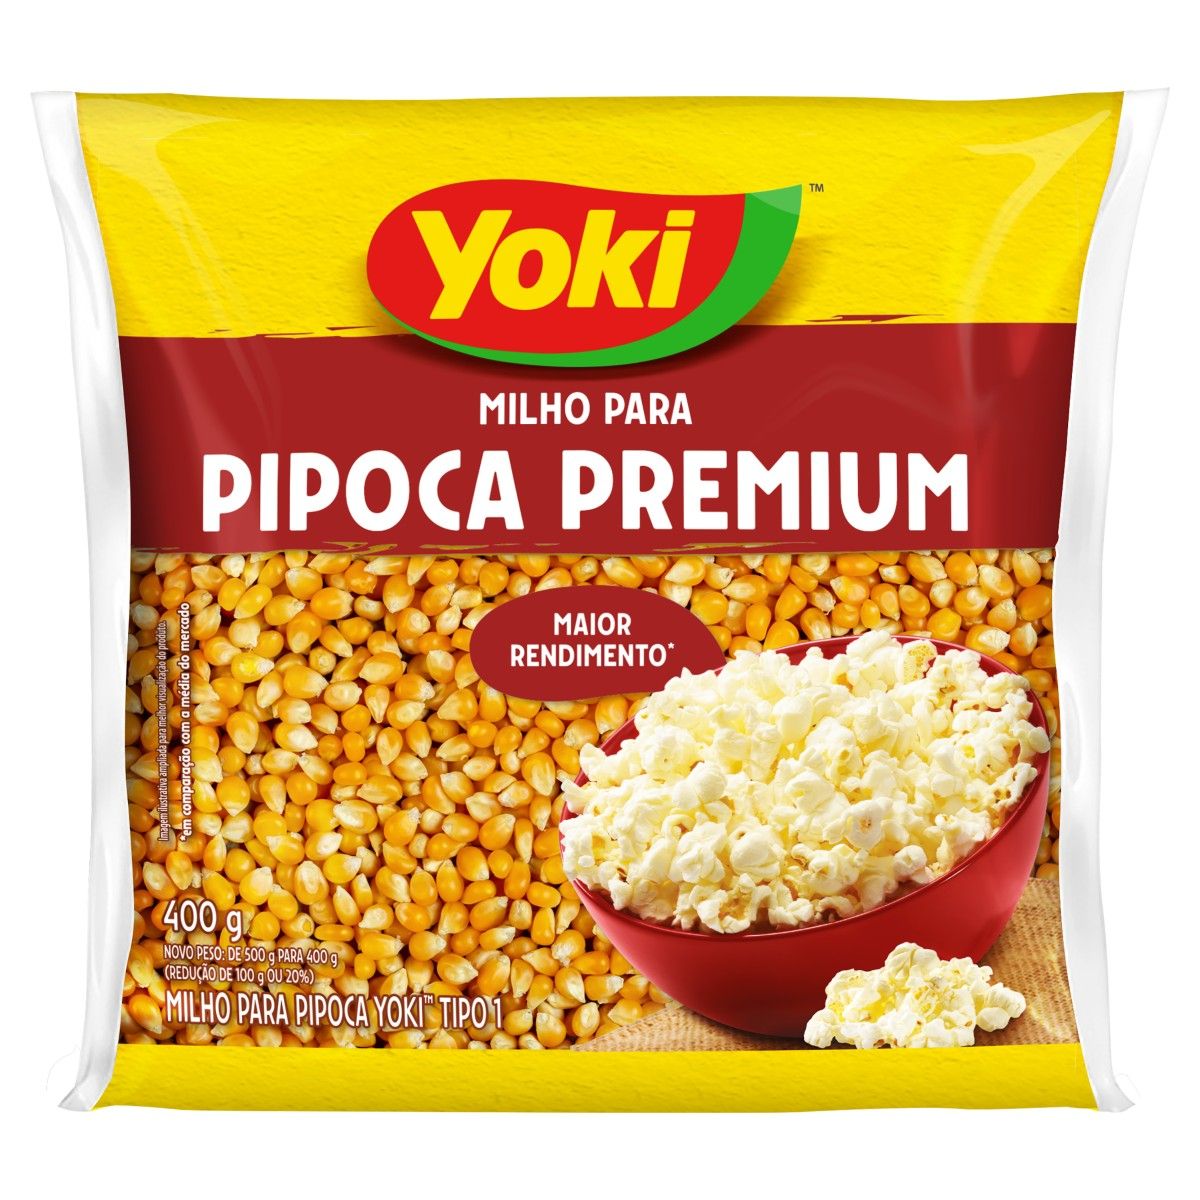 Milho para Pipoca Yoki Premium Tipo 1 Pacote 400g